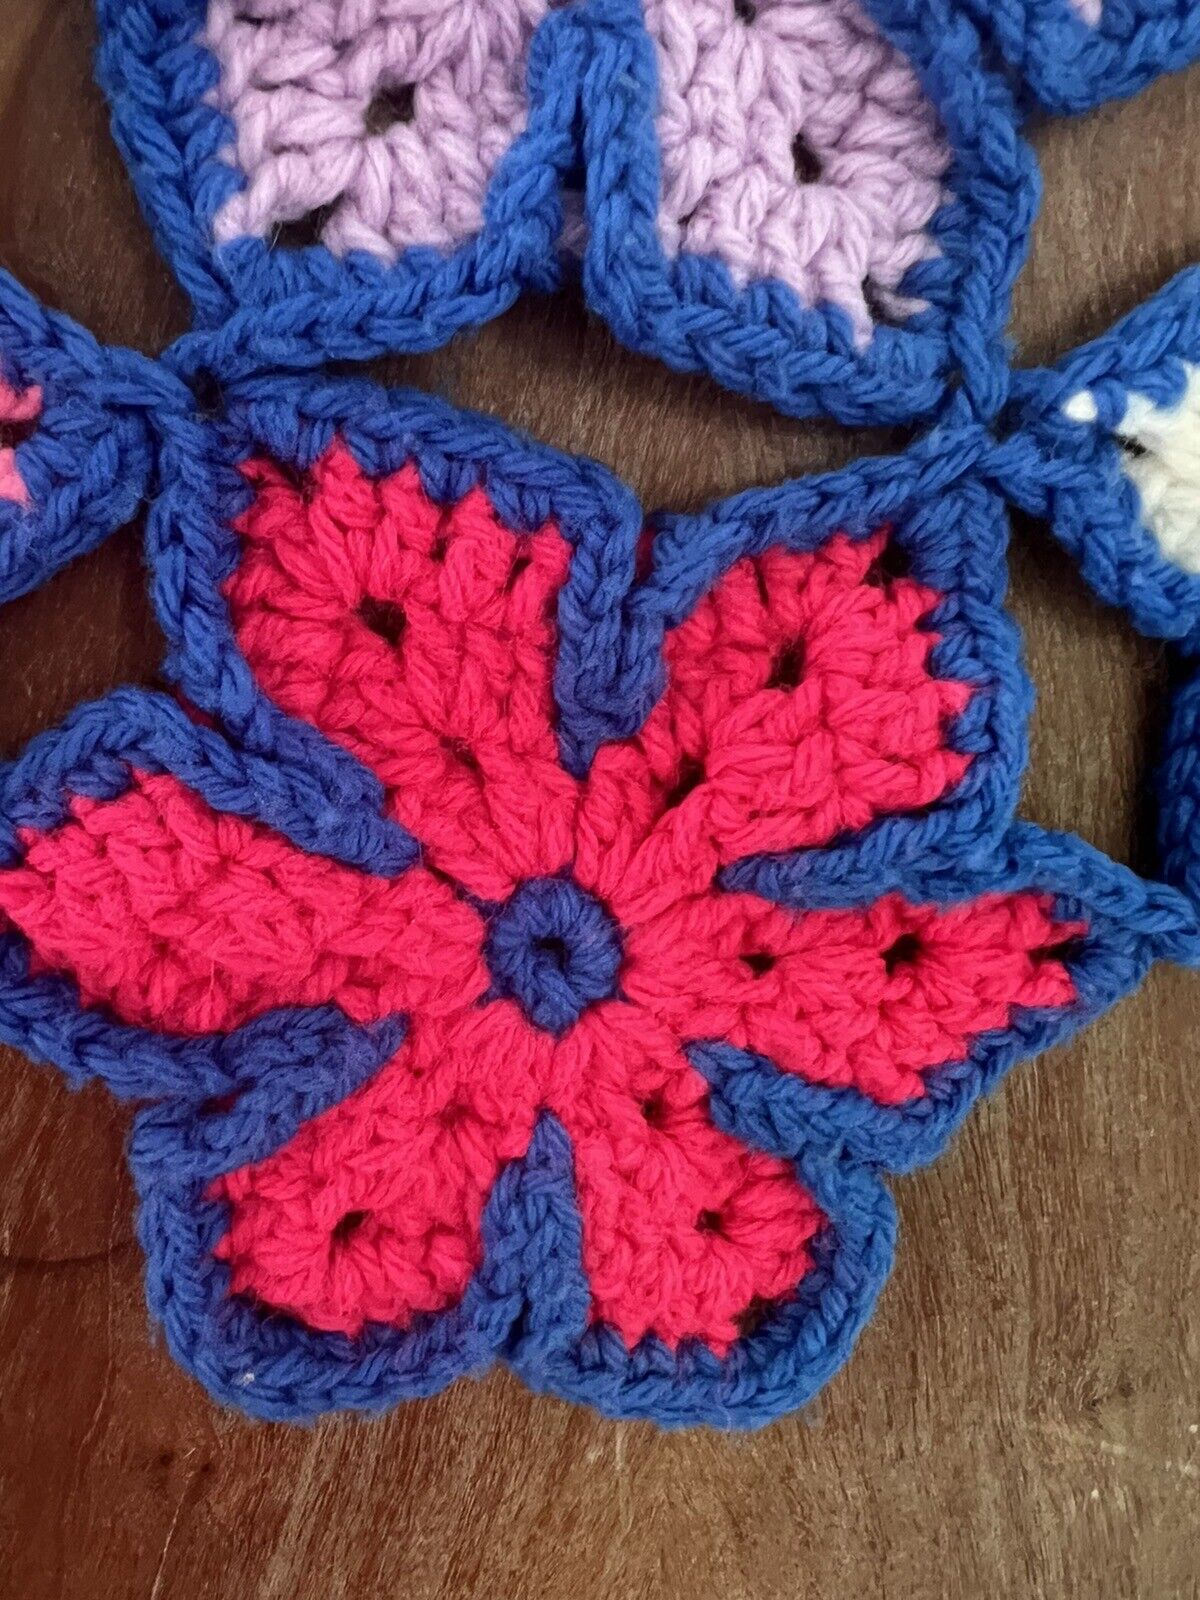 Vtg Crochet Blue Border Star Flower Afghan Granny Square Throw Blanket 60x44